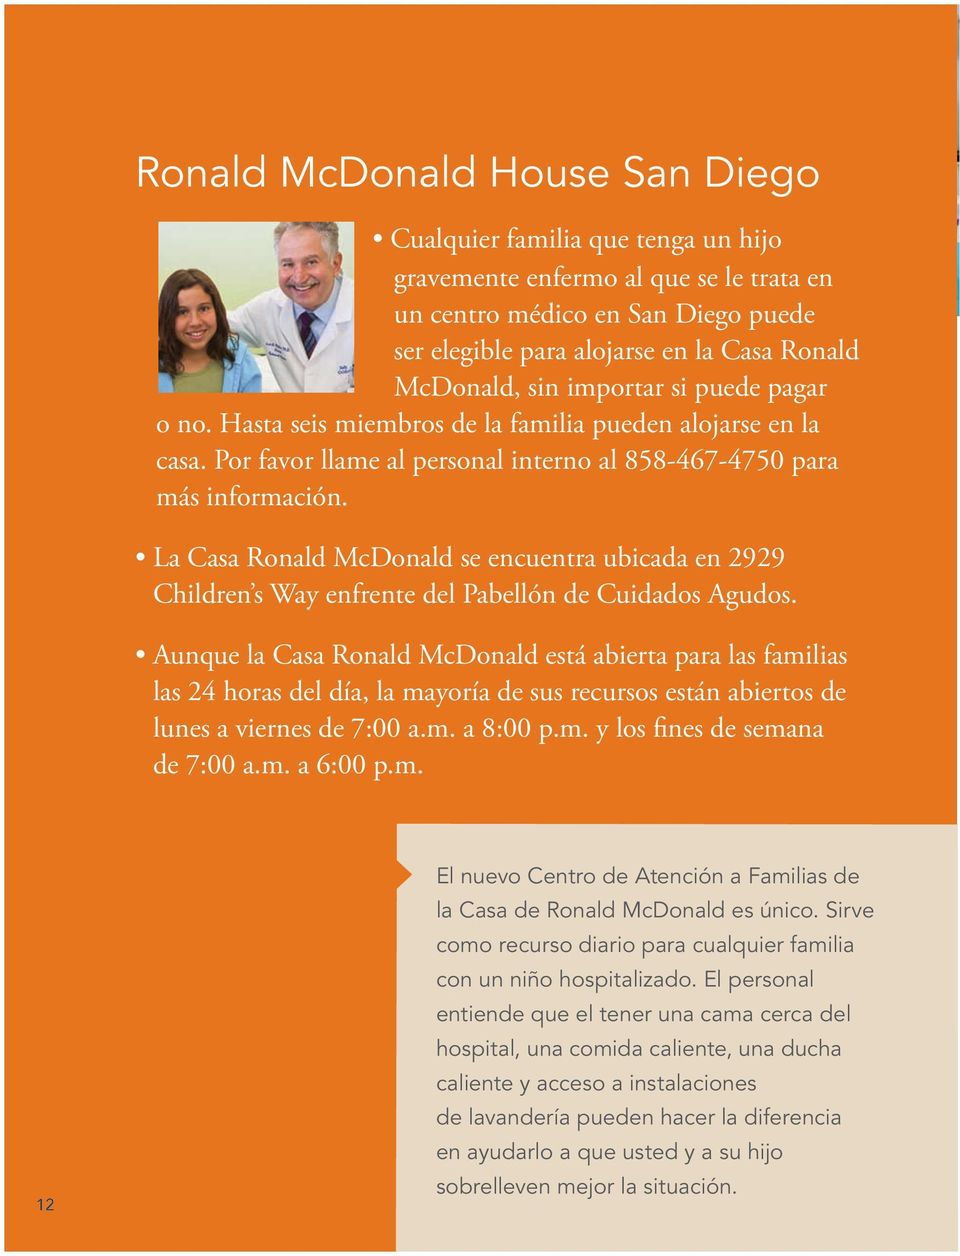 La Casa Ronald McDonald se encuentra ubicada en 2929 Children s Way enfrente del Pabellón de Cuidados Agudos.